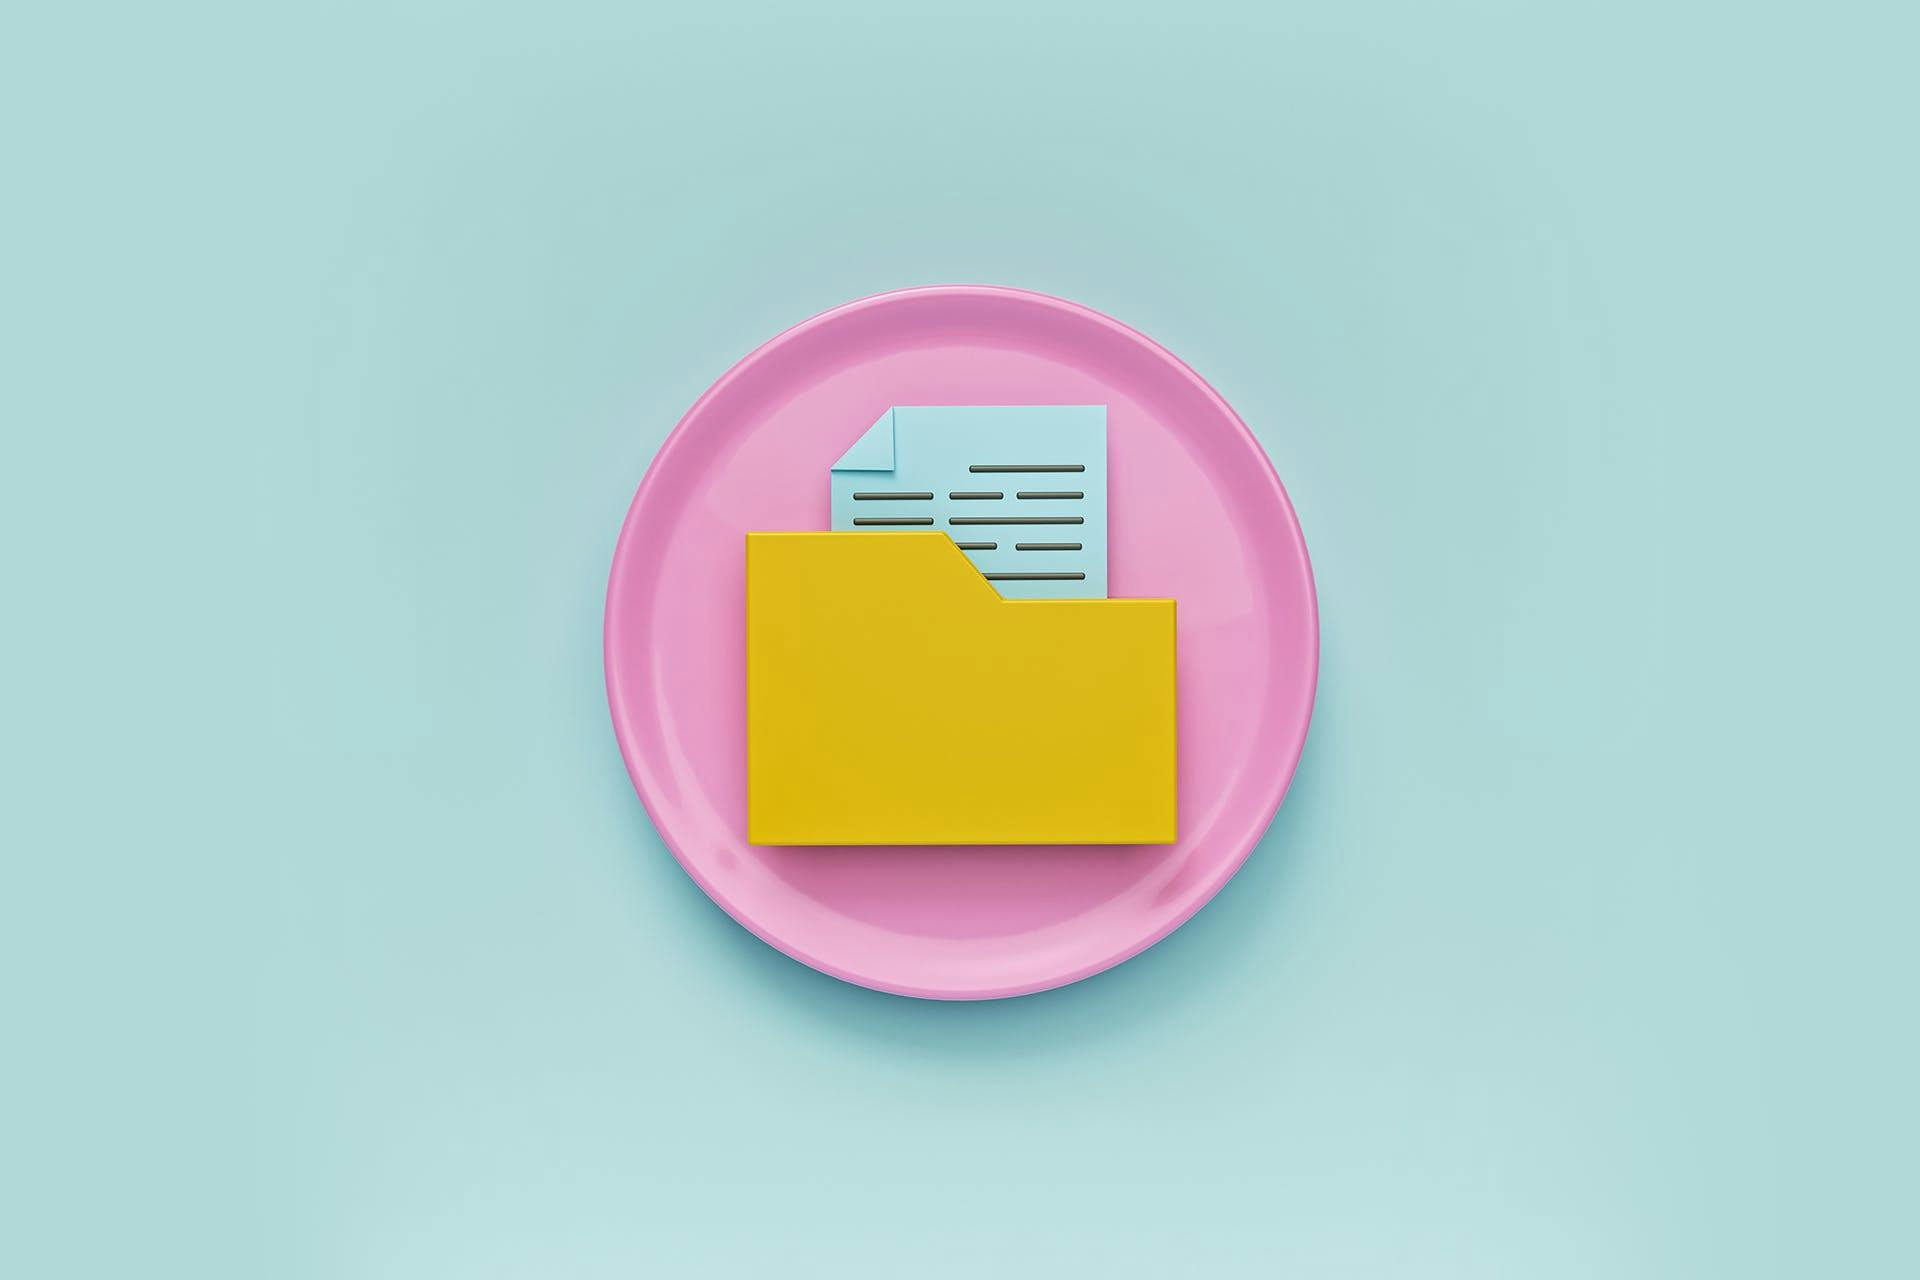 un rond rose dans lequel est disposé un dossier jaune contenant un fichier